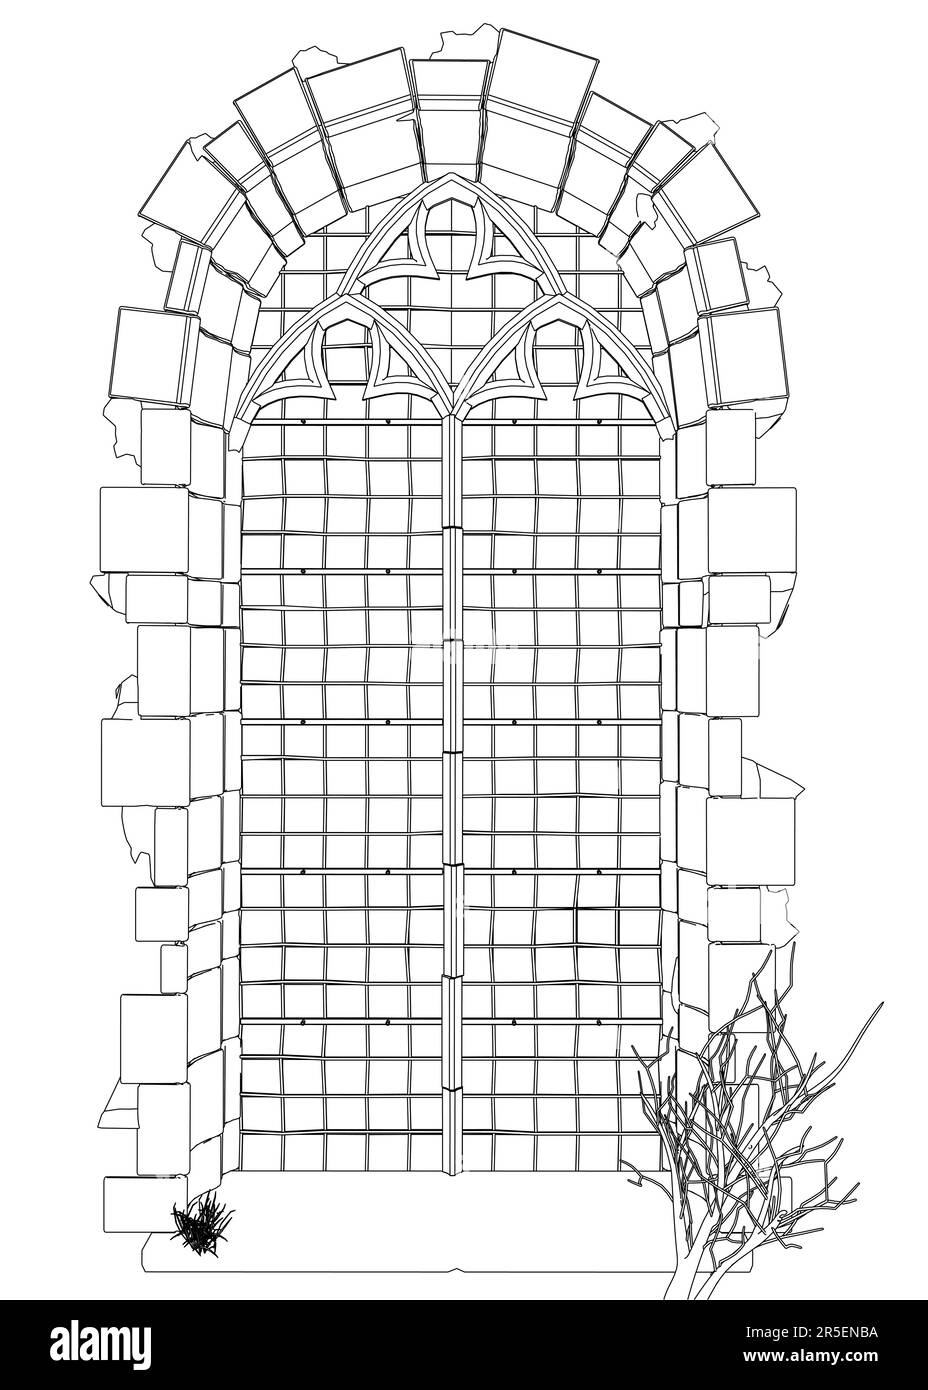 Contorno di una finestra del tempio d'epoca dalle linee nere isolate su uno sfondo bianco. Vista frontale. 3D. Illustrazione vettoriale. Illustrazione Vettoriale